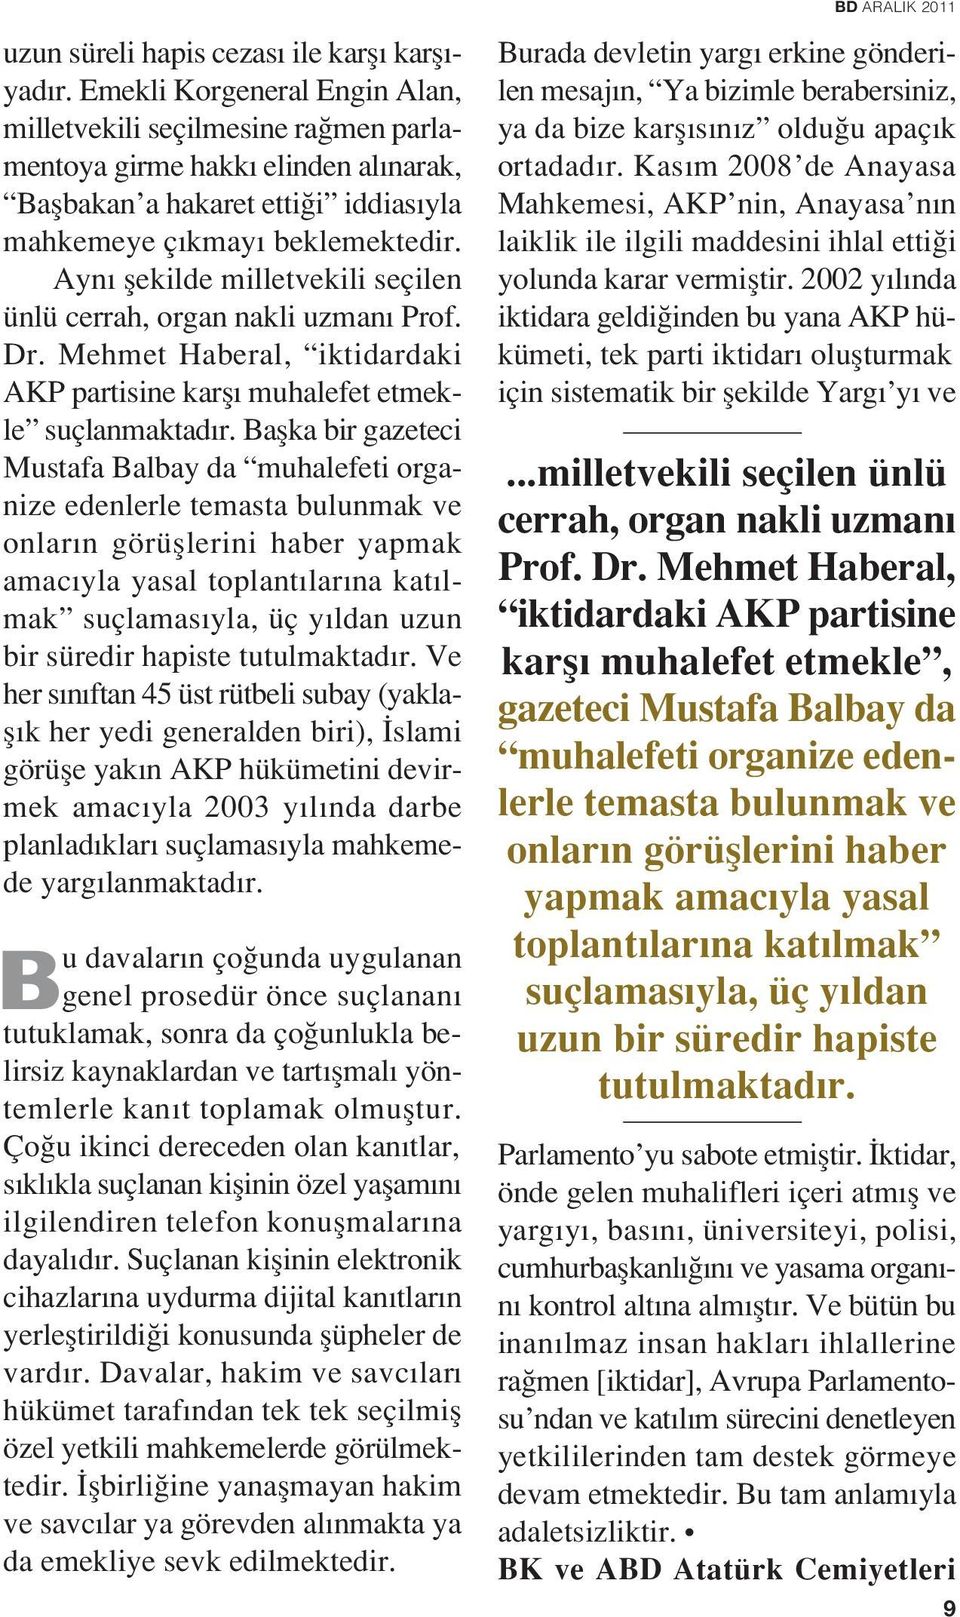 Ayn flekilde milletvekili seçilen ünlü cerrah, organ nakli uzman Prof. Dr. Mehmet Haberal, iktidardaki AKP partisine karfl muhalefet etmekle suçlanmaktad r.